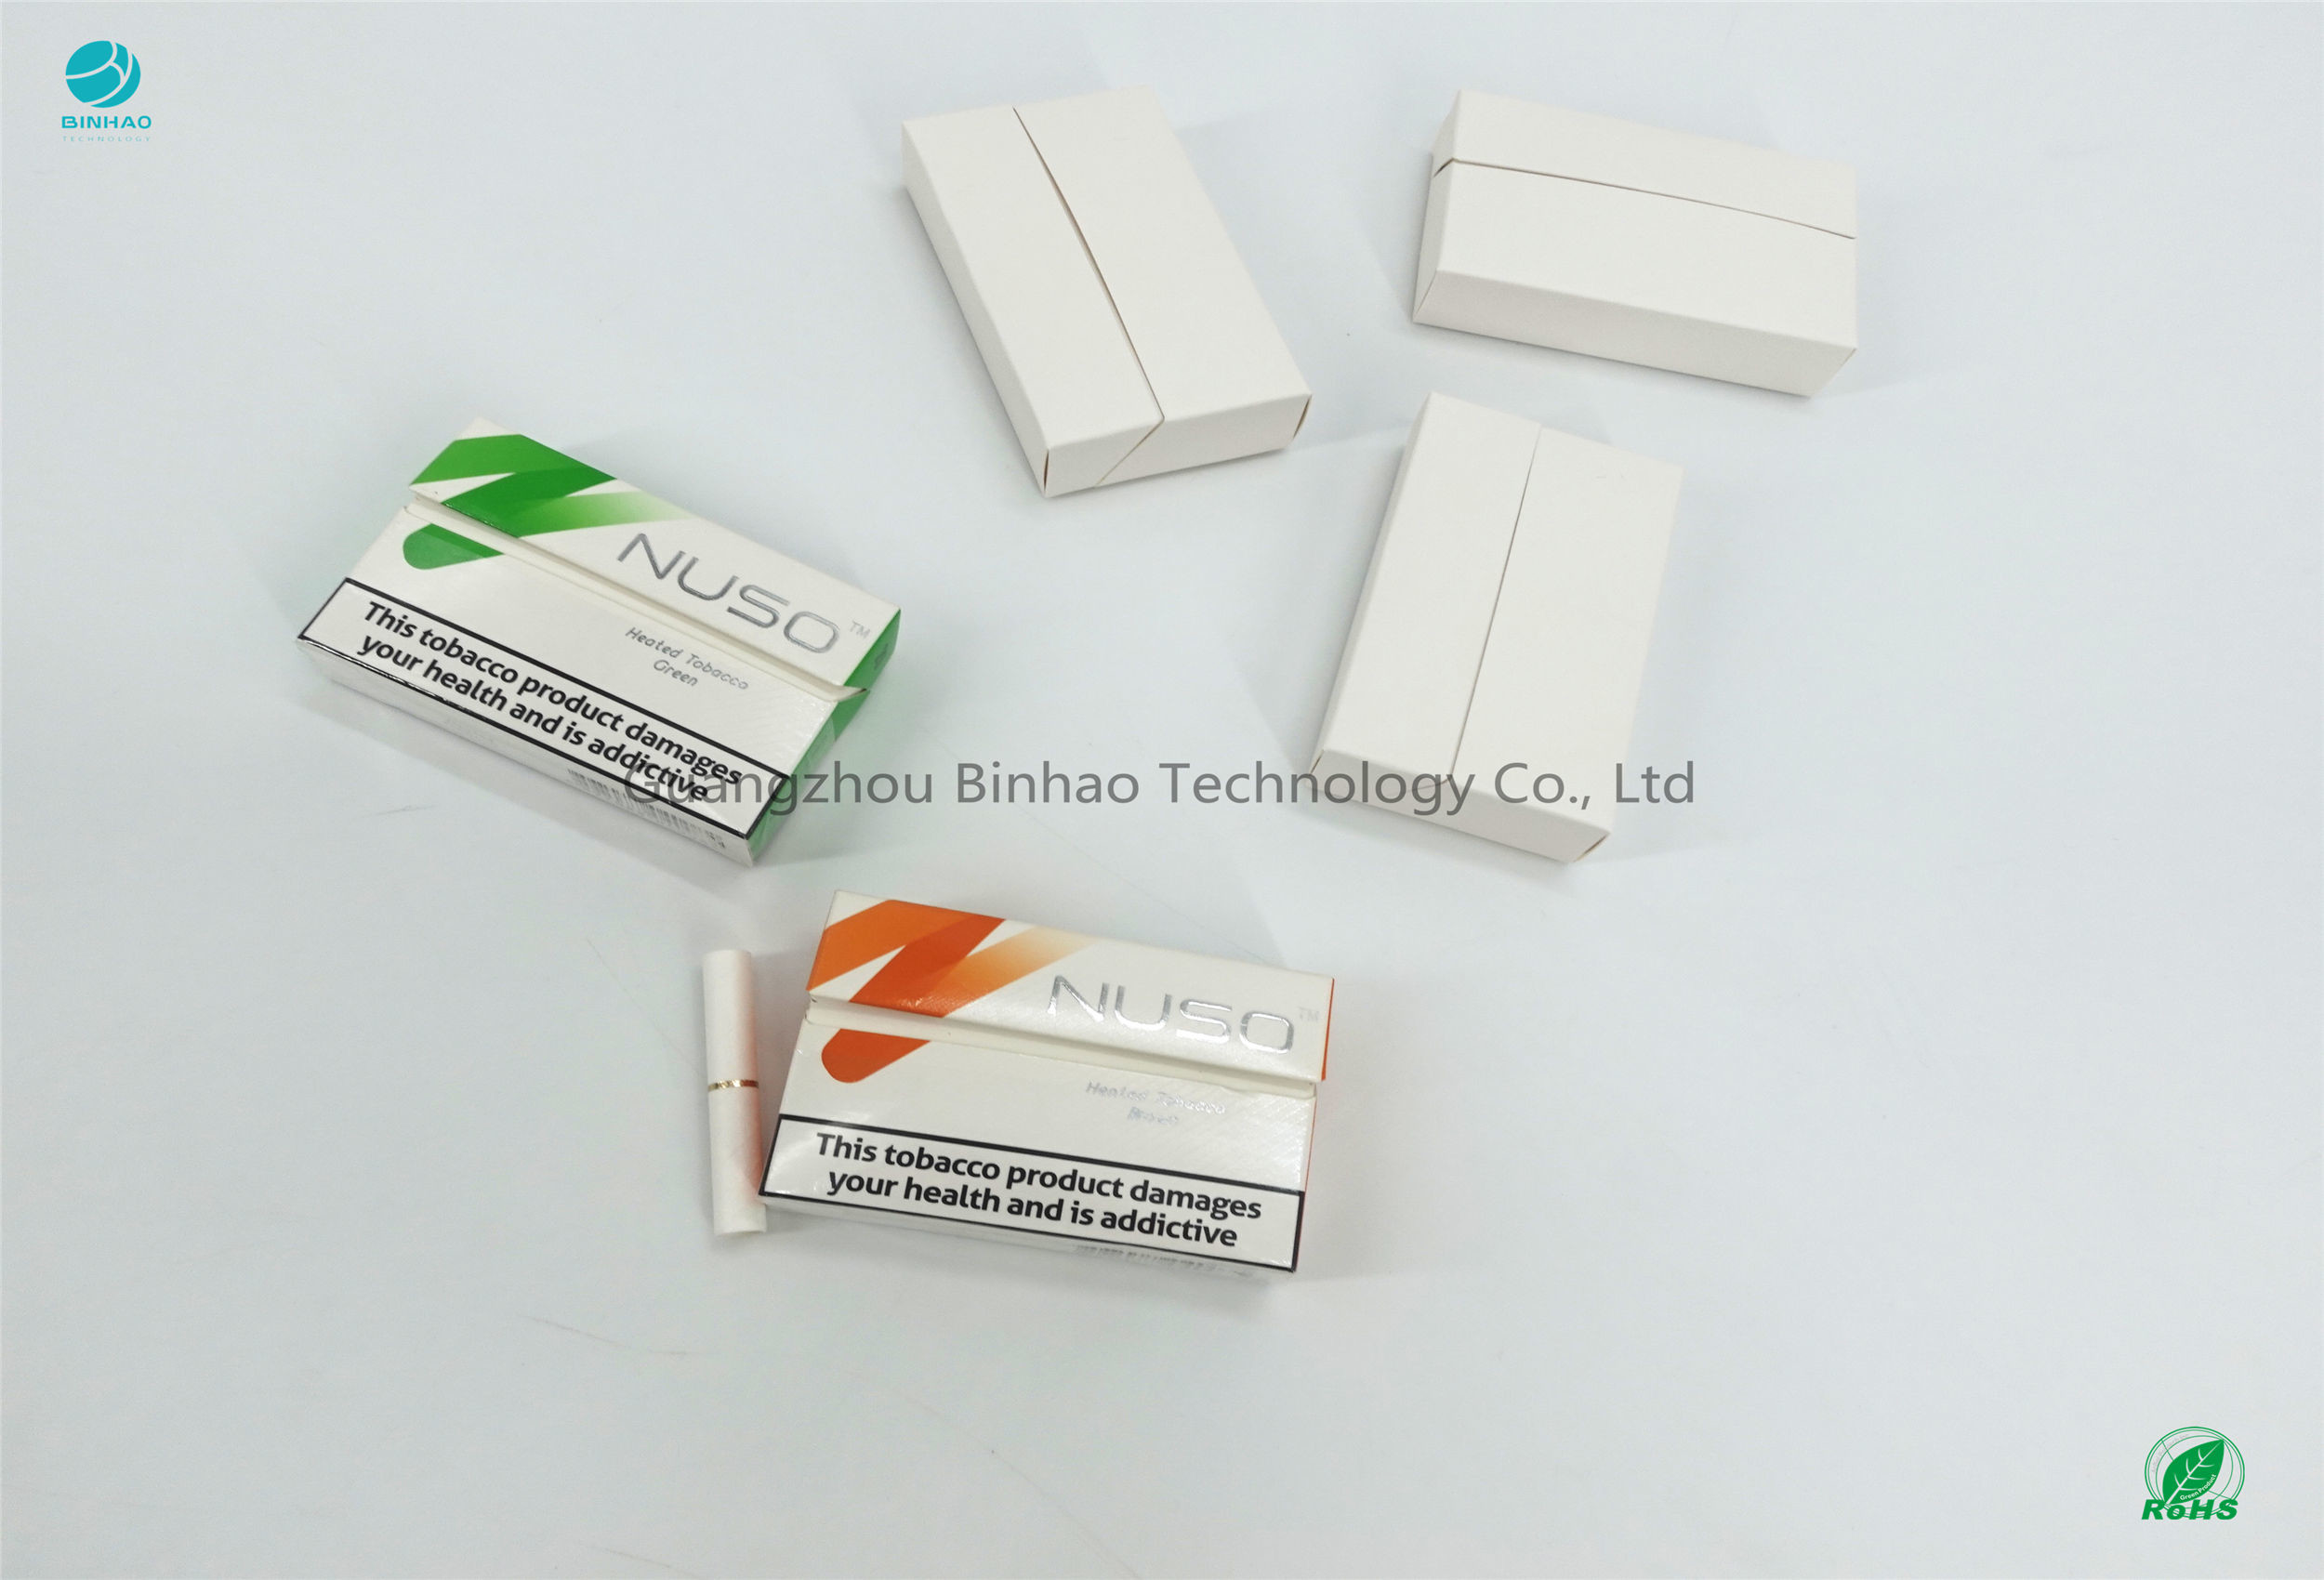 El cartón de los materiales del paquete del E-tabaco conveniente para el sabor sin igual calienta no la quemadura